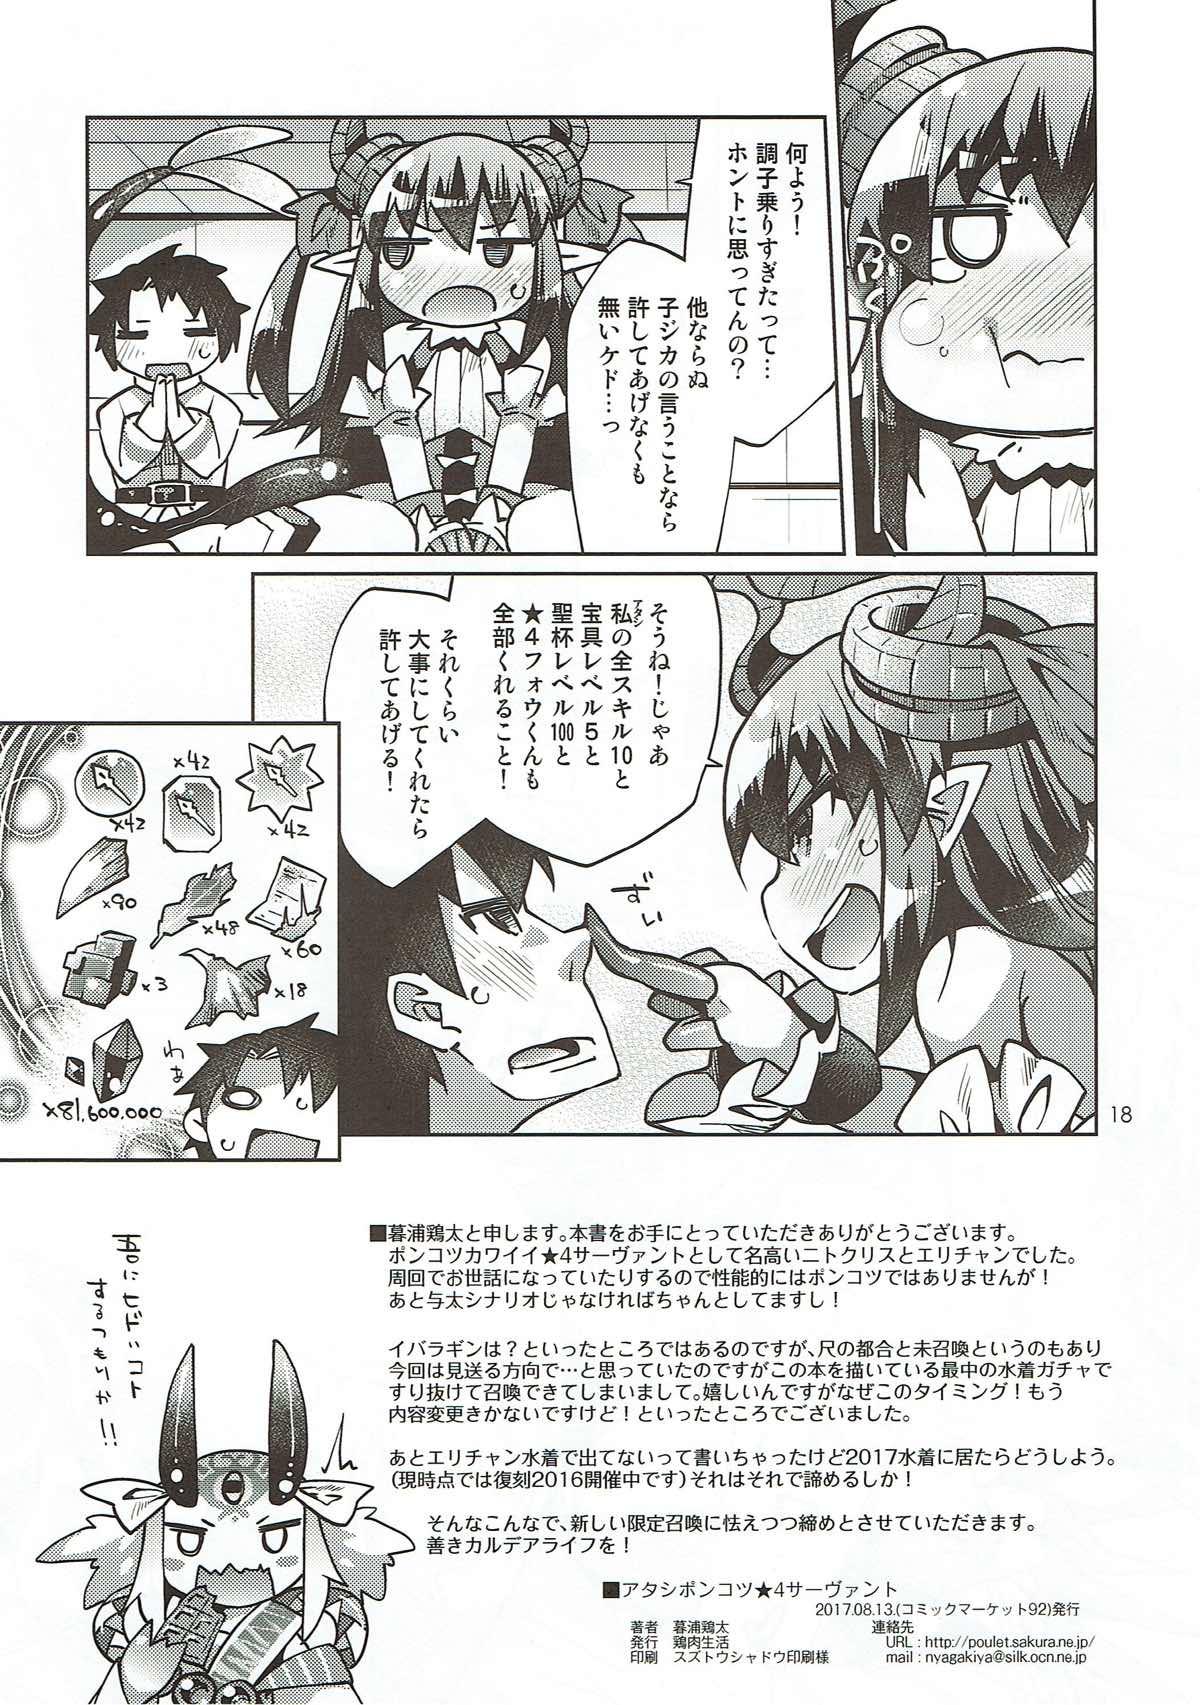 Cutie Atashi Ponkotsu SR Servant - Fate grand order Hardcore - Page 17